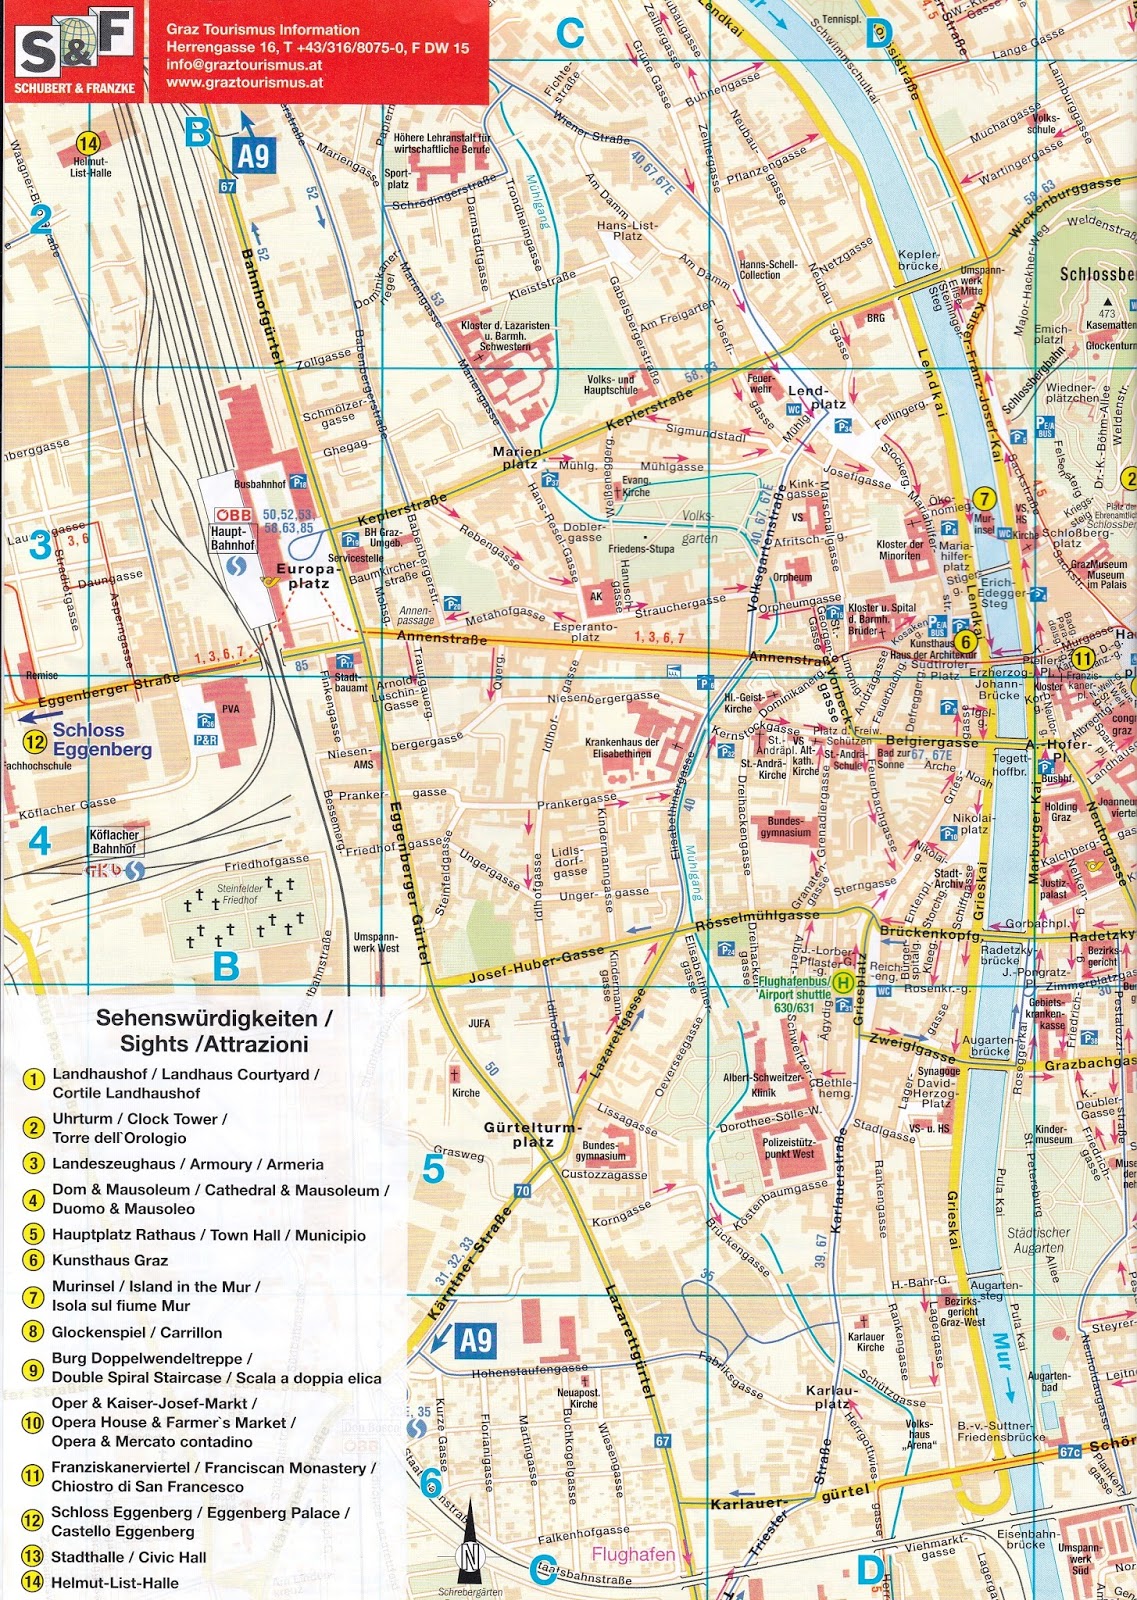 grad krf mapa Kao na dlanu : Skenirana mapa Graca   glavne atrakcije grada grad krf mapa